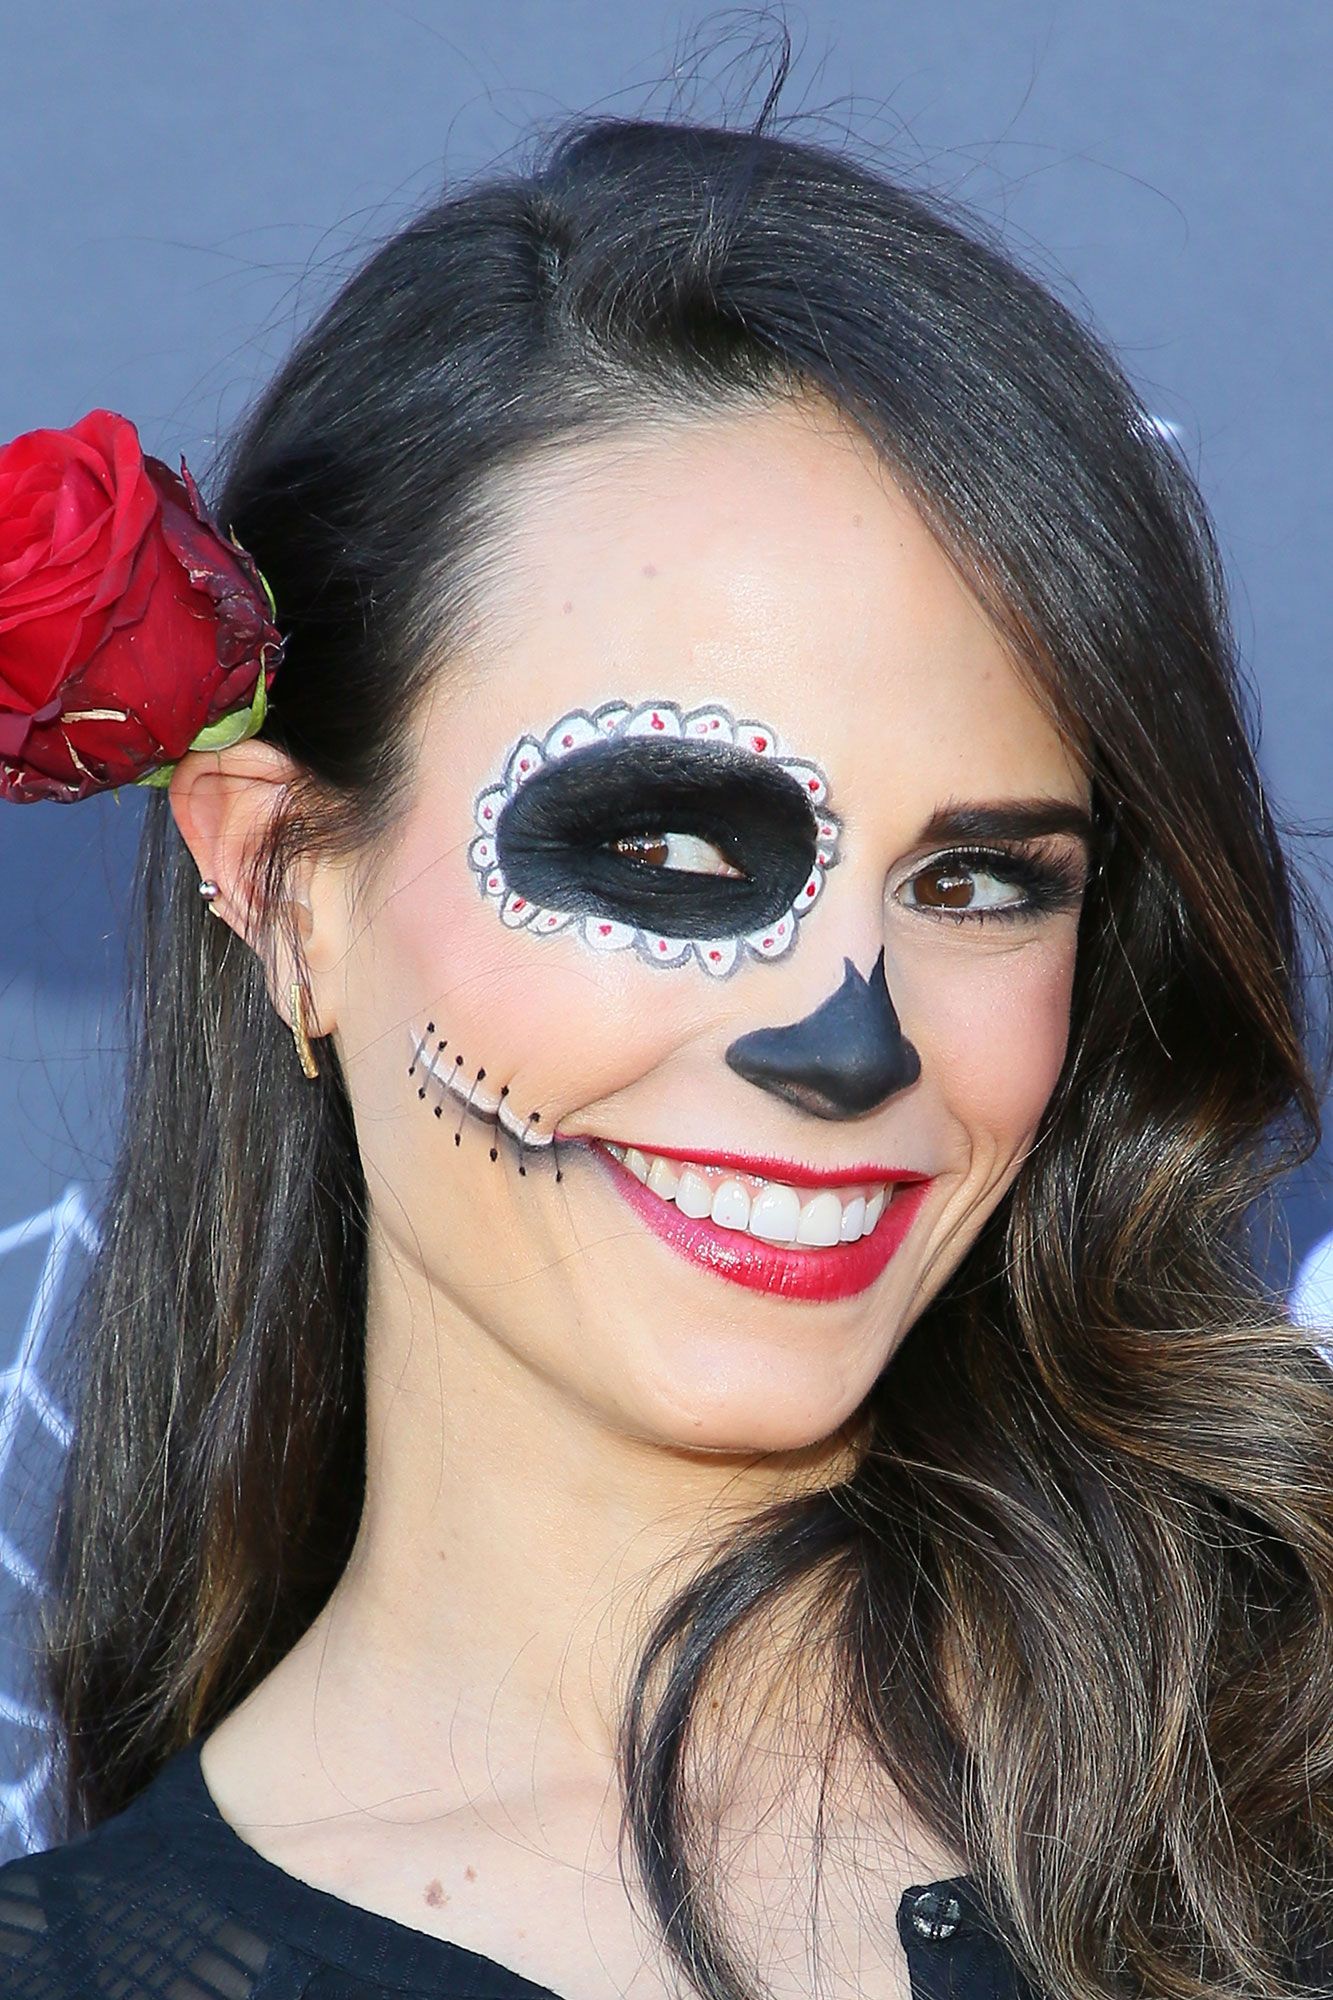 Maquillaje de Halloween: rápido y fácil de hacer